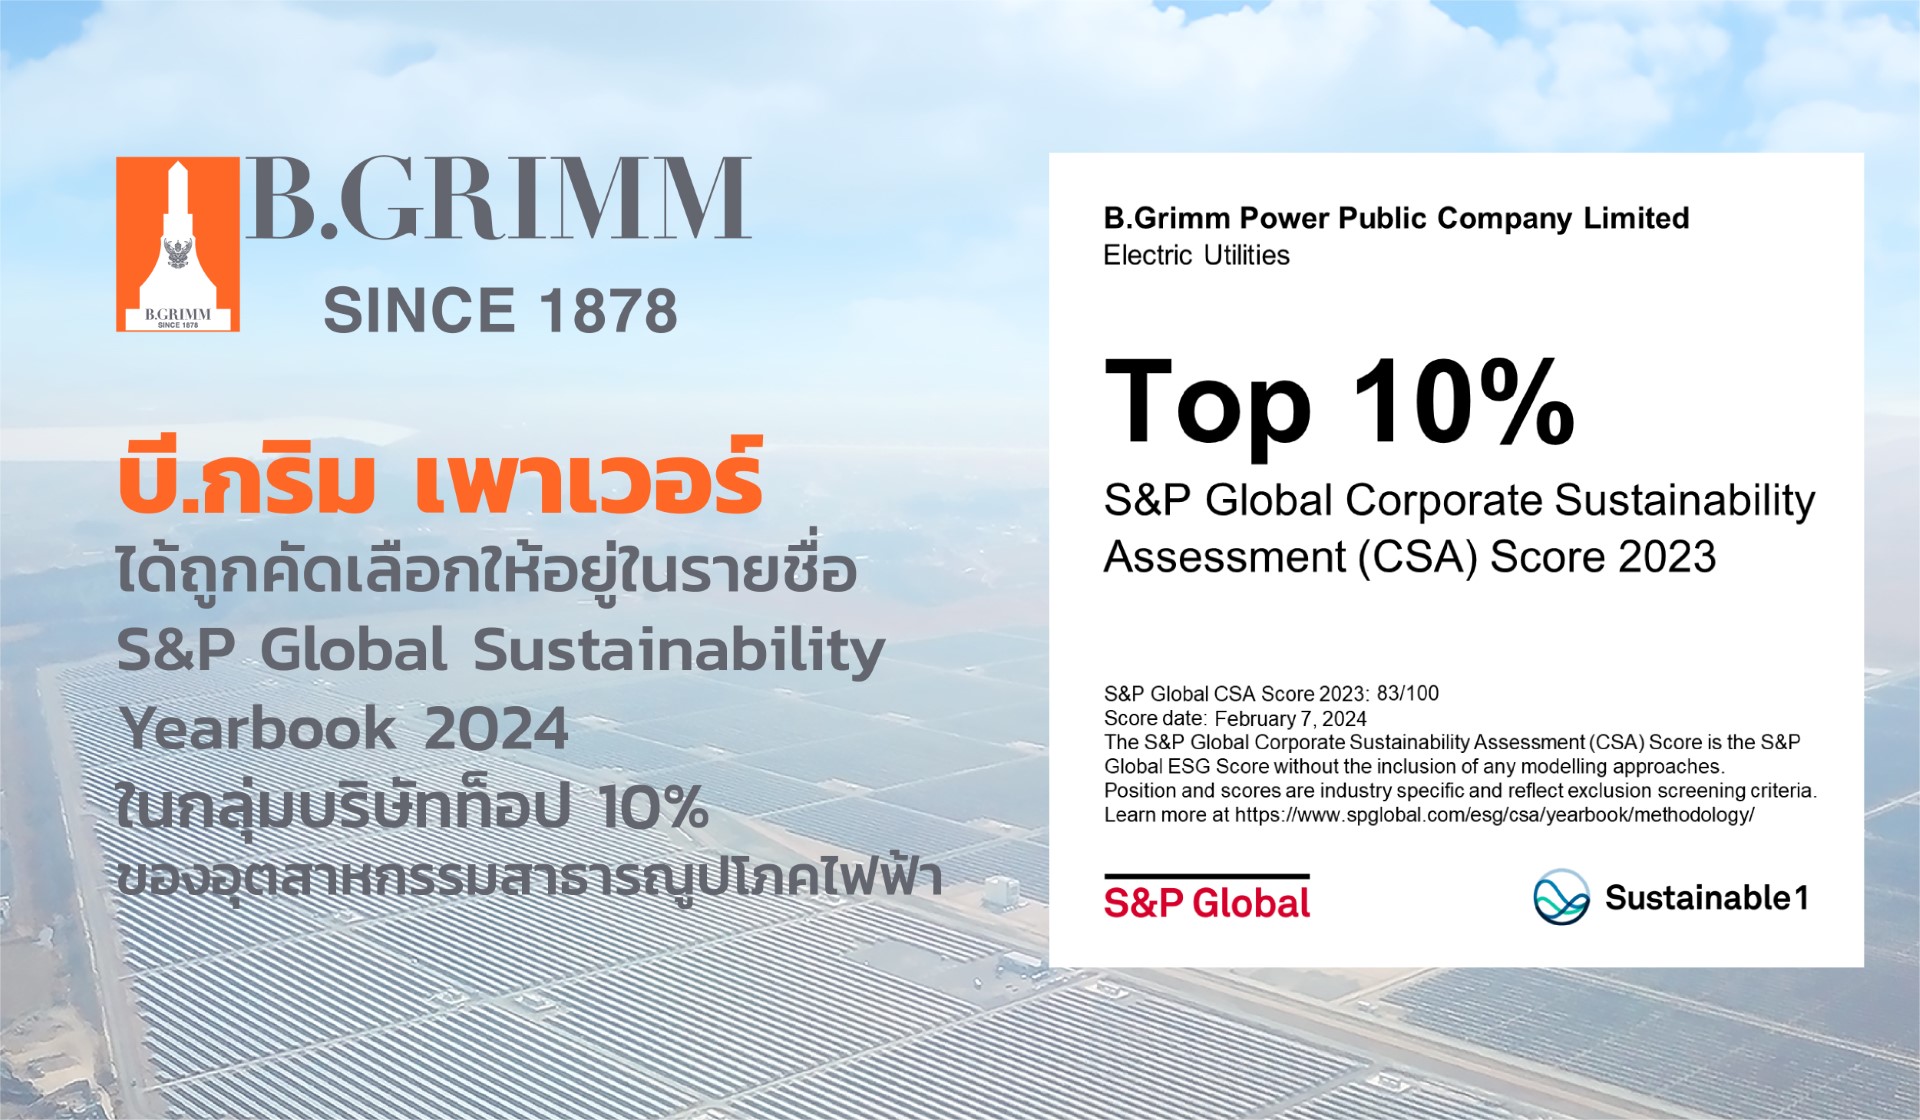 BGRIM หนึ่งเดียวในเอเชียคว้ารางวัลองค์กรยั่งยืนระดับโลก จาก S&P Global ในระดับ Top 10%